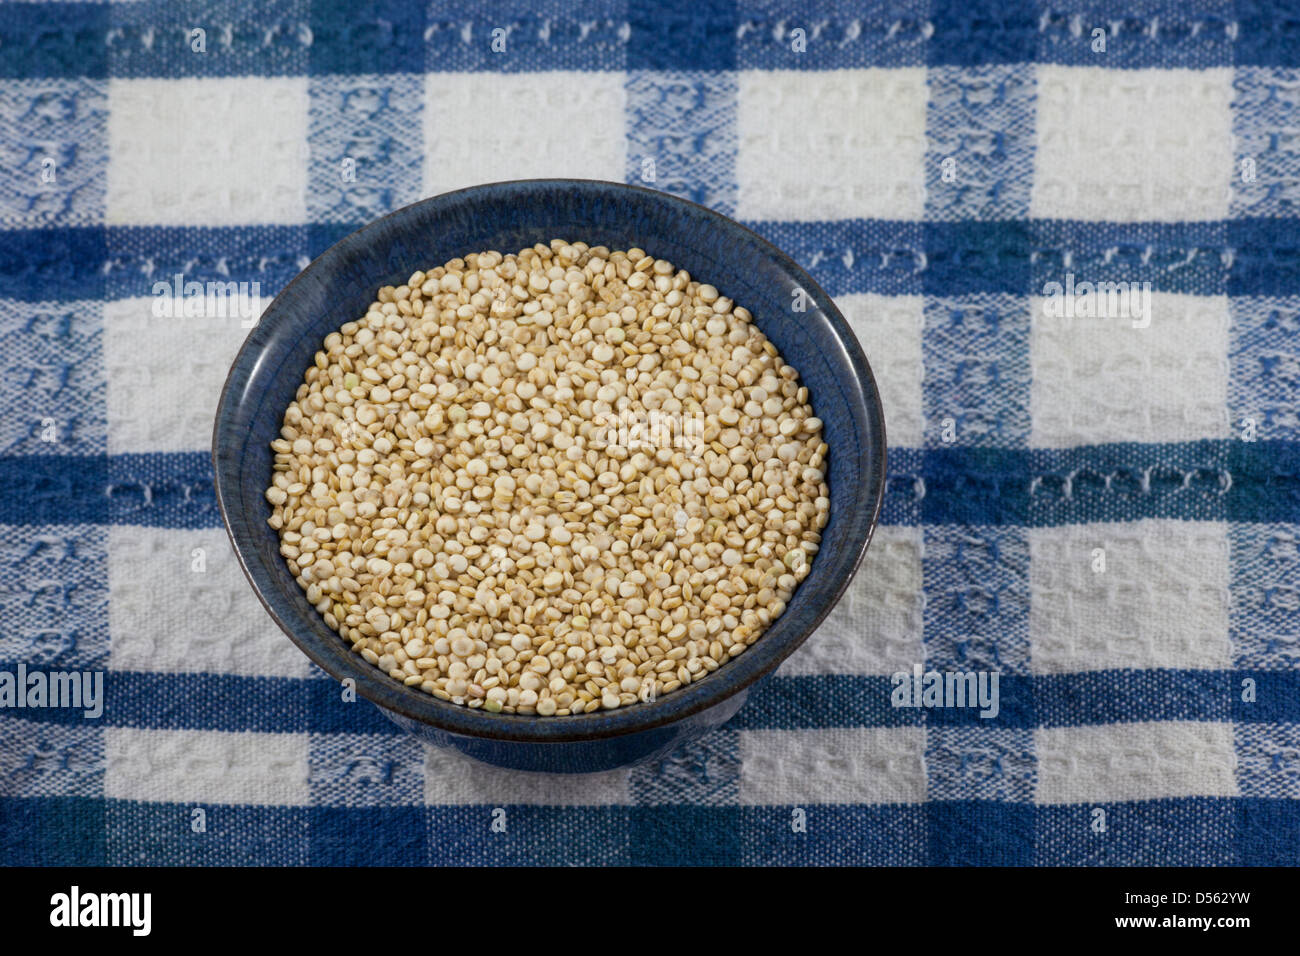 Organic golden (white) quinoa (Chenopodium quinoa) on blue and white checked tablecloth Stock Photo